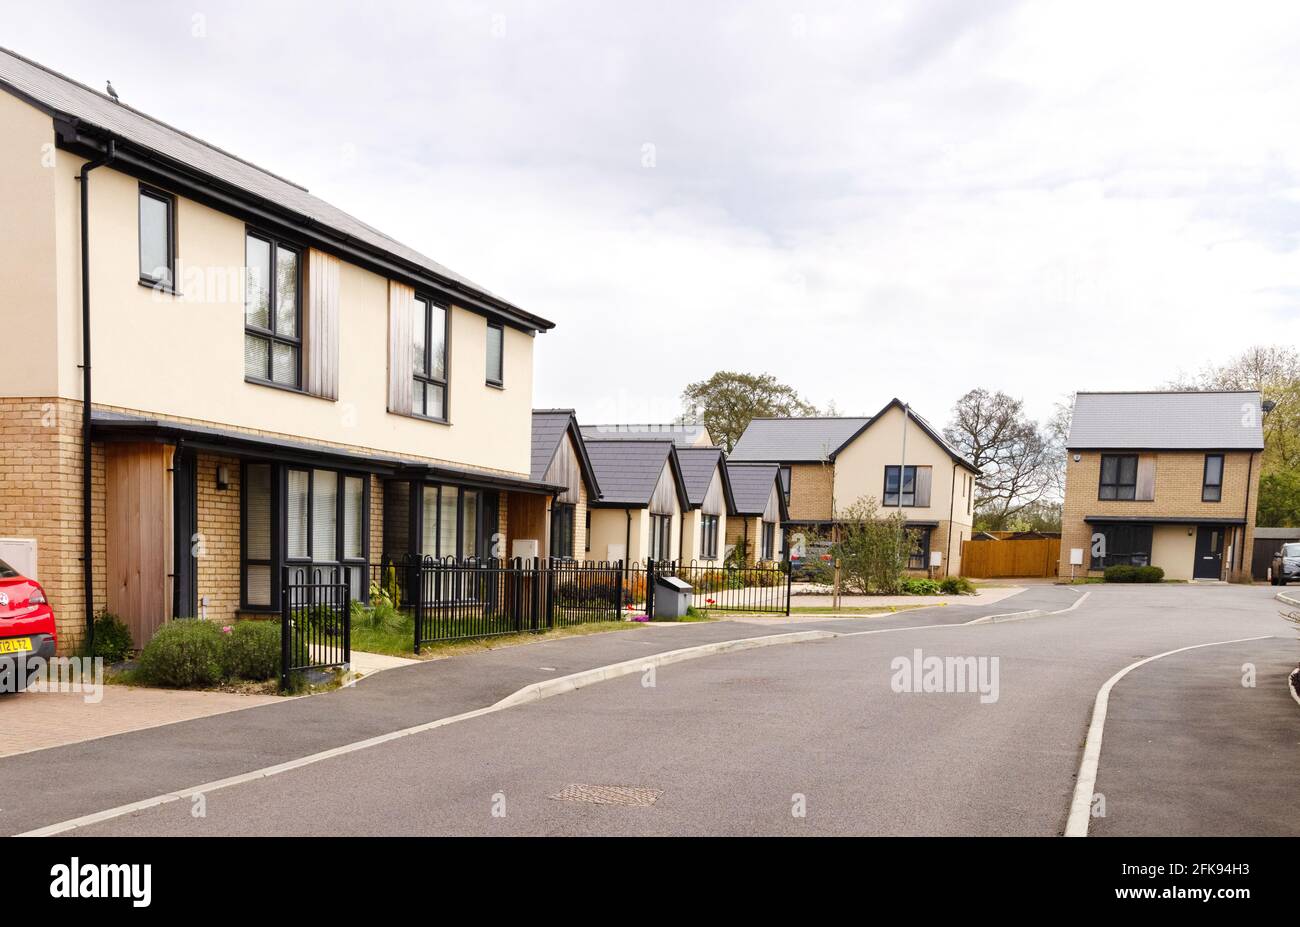 Case del XXI secolo nel Regno Unito; nuove case in sviluppo a Suffolk, Regno Unito Foto Stock